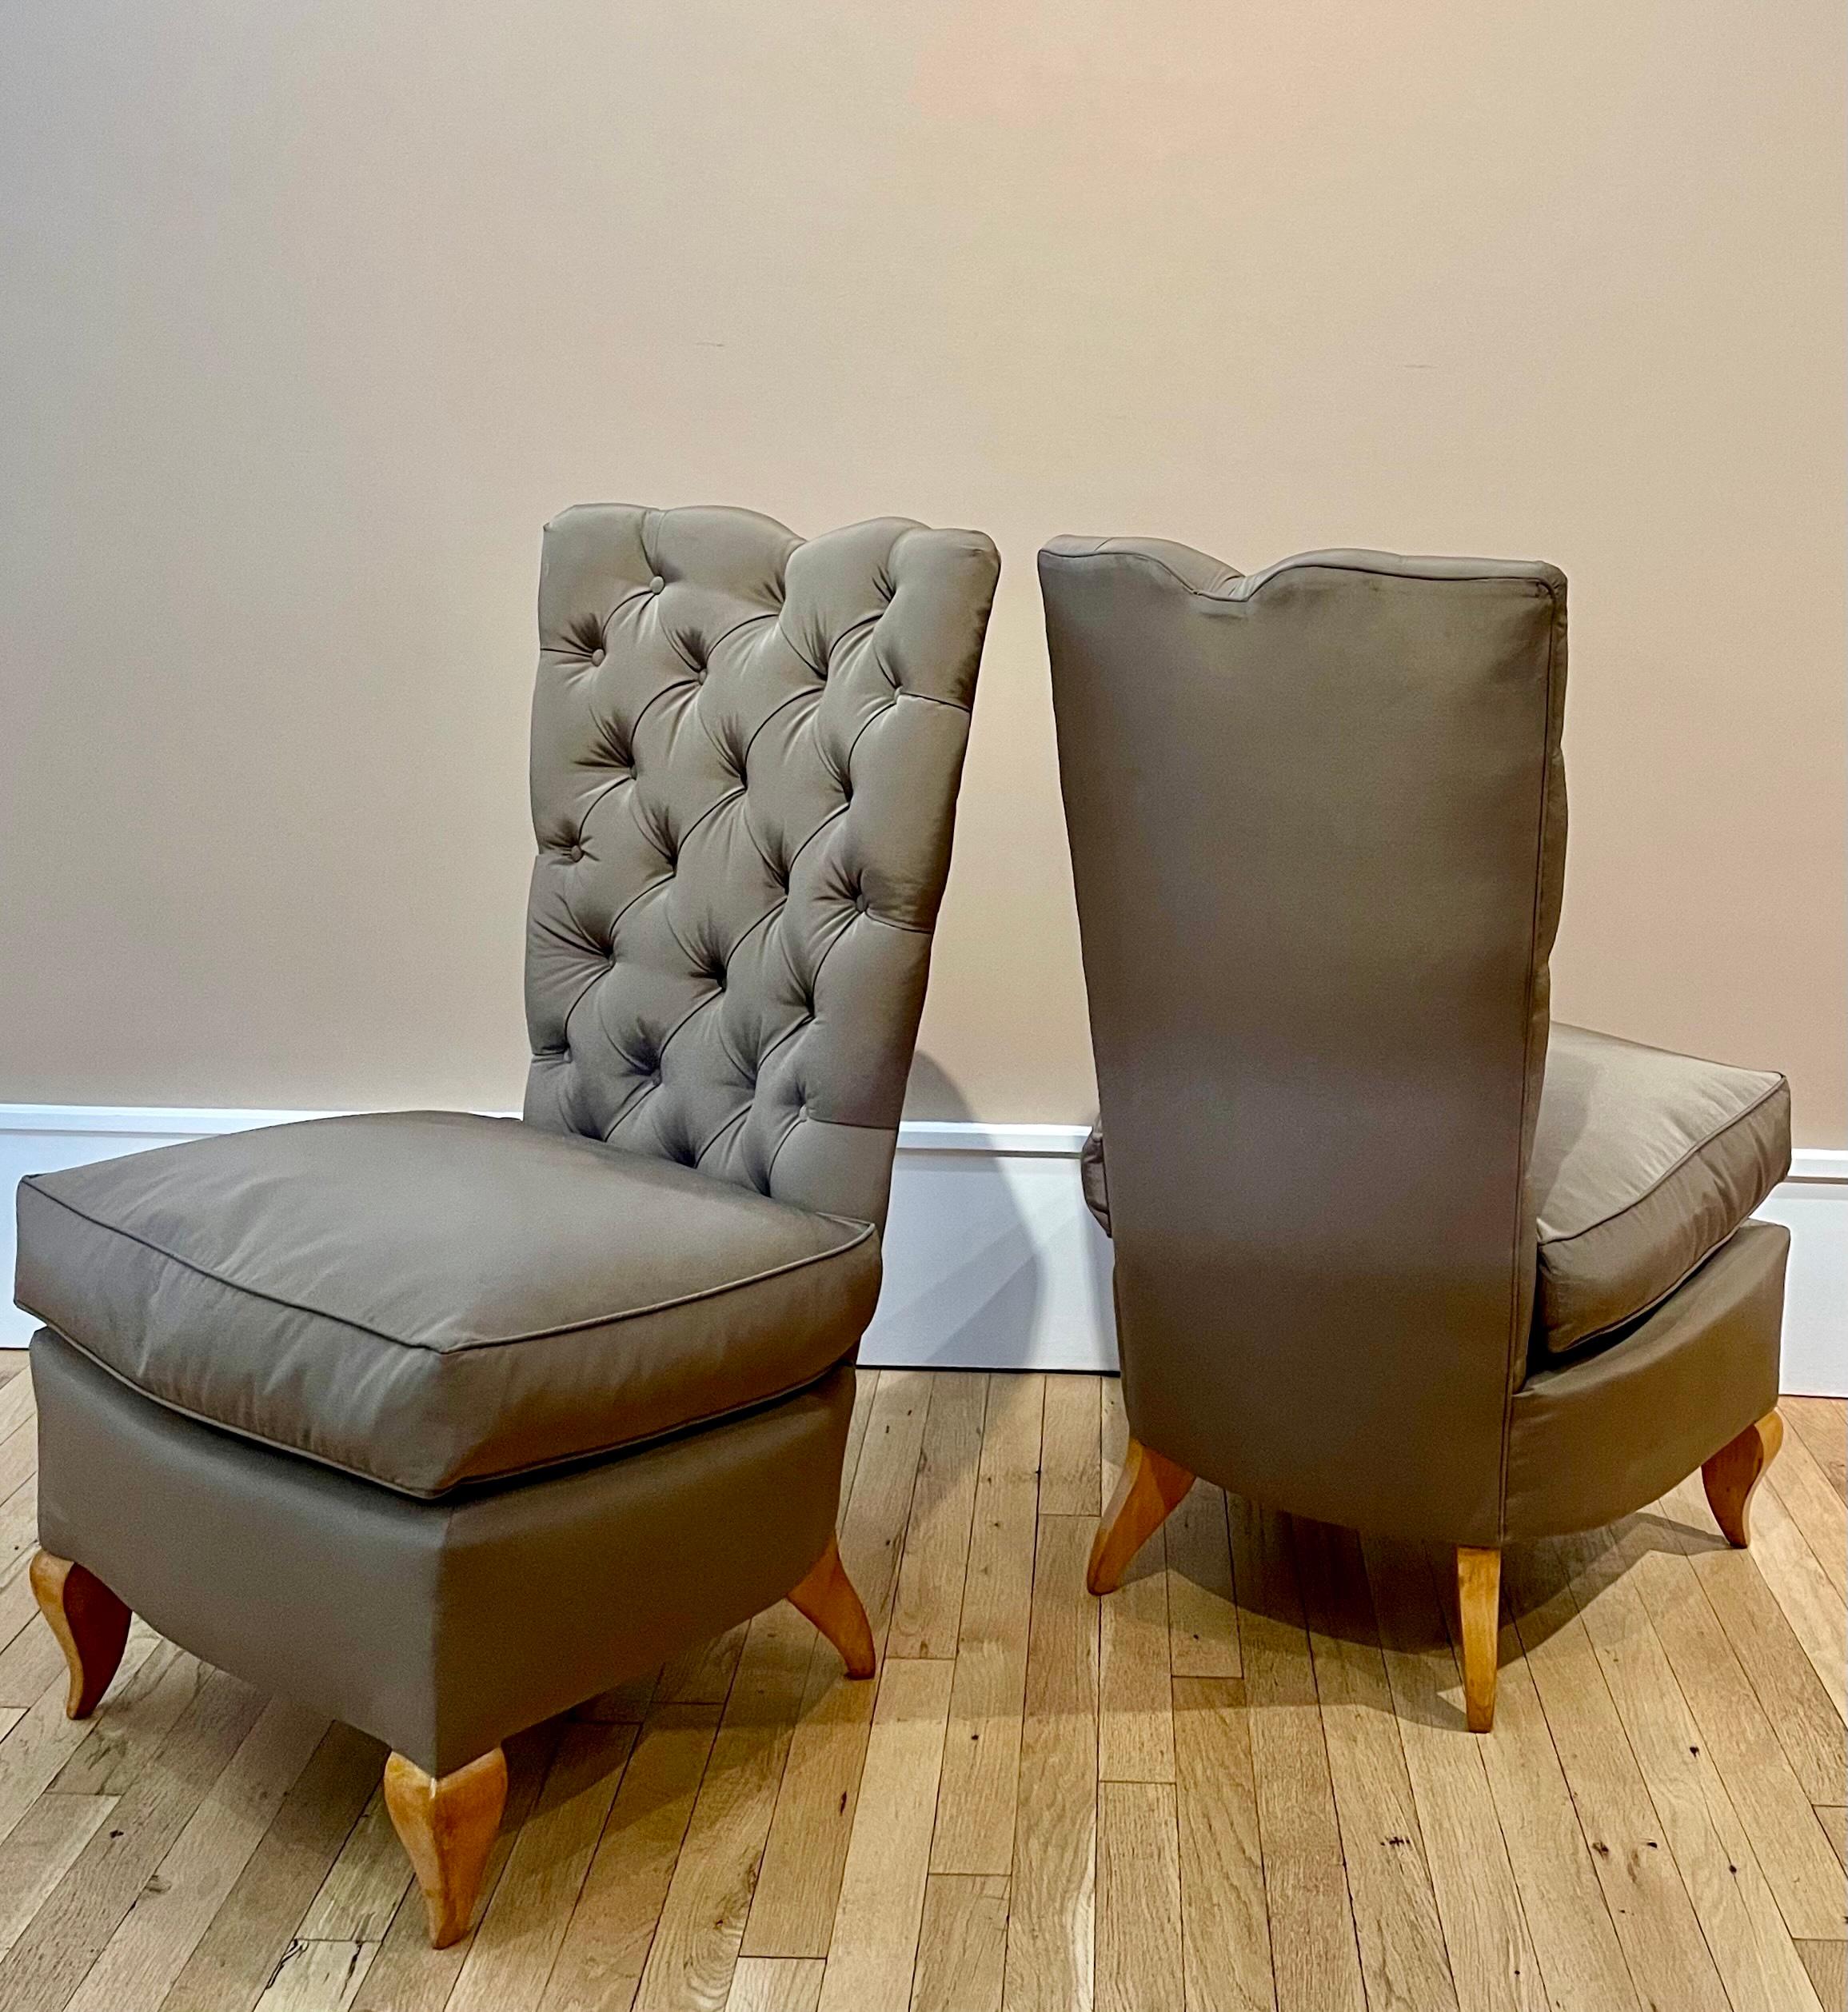 Diese erdgebundenen Stühle scheinen schwerelos zu sein. Das ist die Illusion, die der Designer René Prou im Paris der 1930er Jahre mit Hilfe eines hochqualifizierten Polsterers schaffen konnte. Bevor er sich 1920 selbstständig machte, hatte Prou für